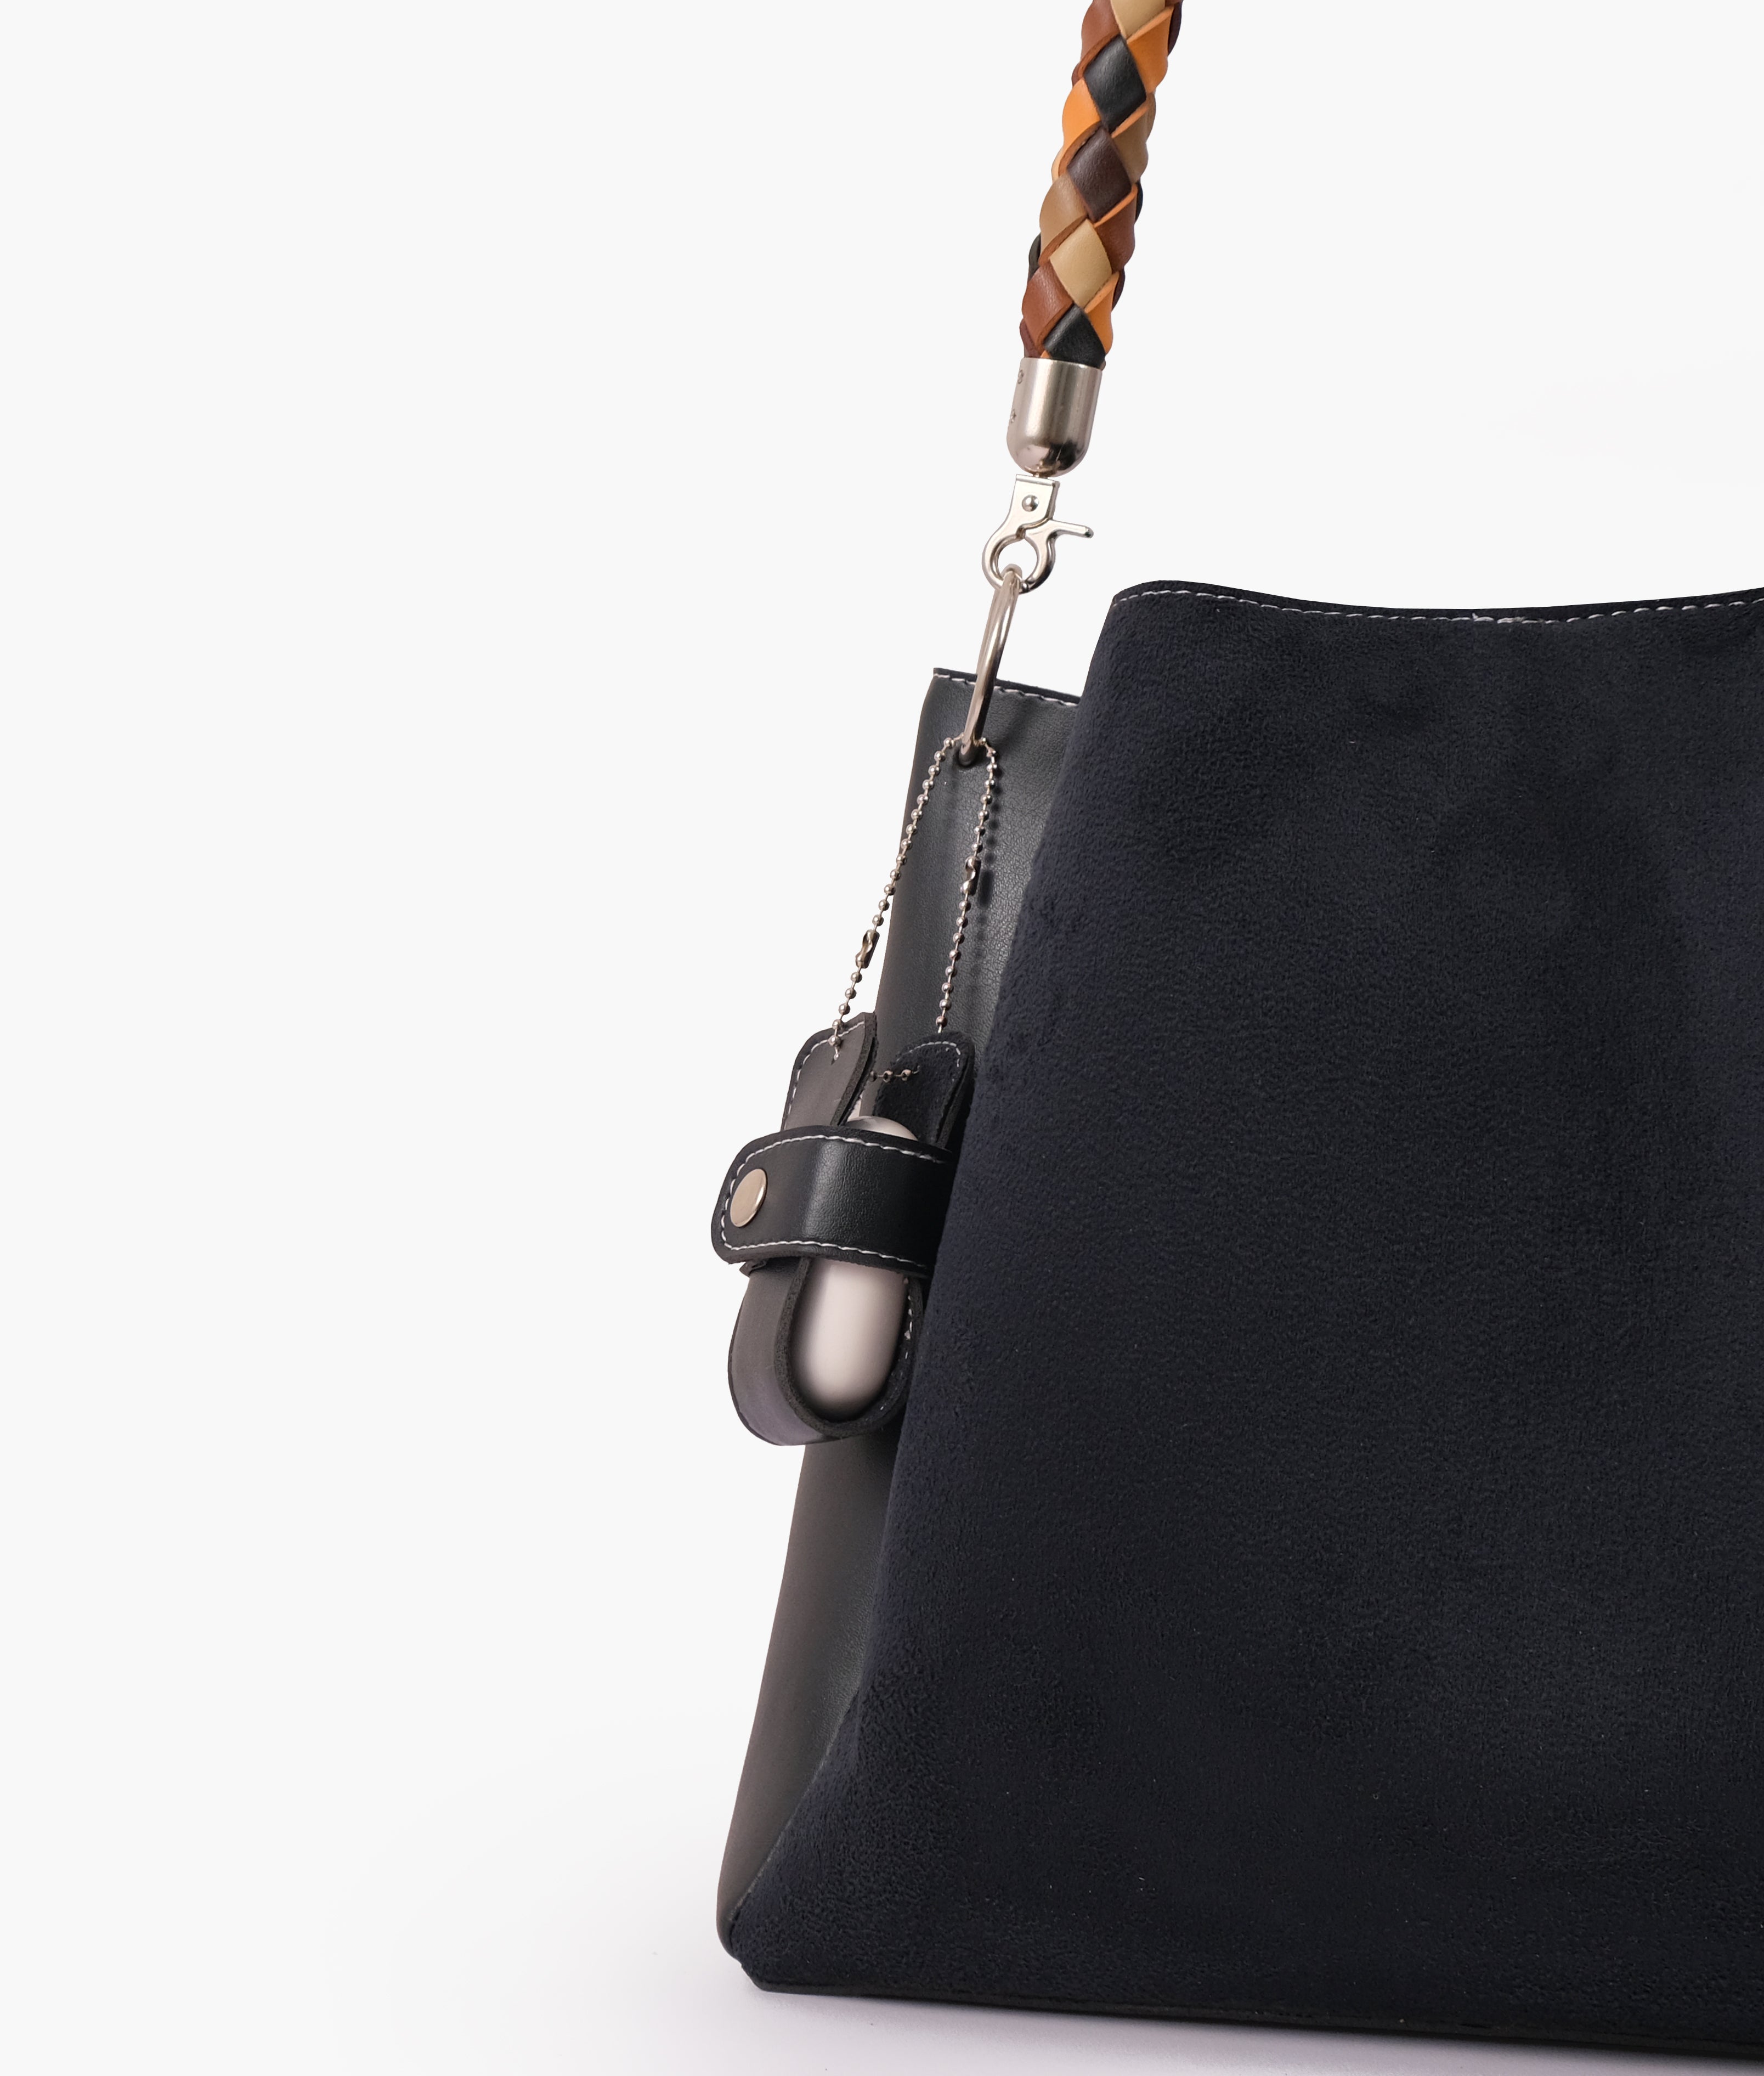 Black suede handbag with braided handle